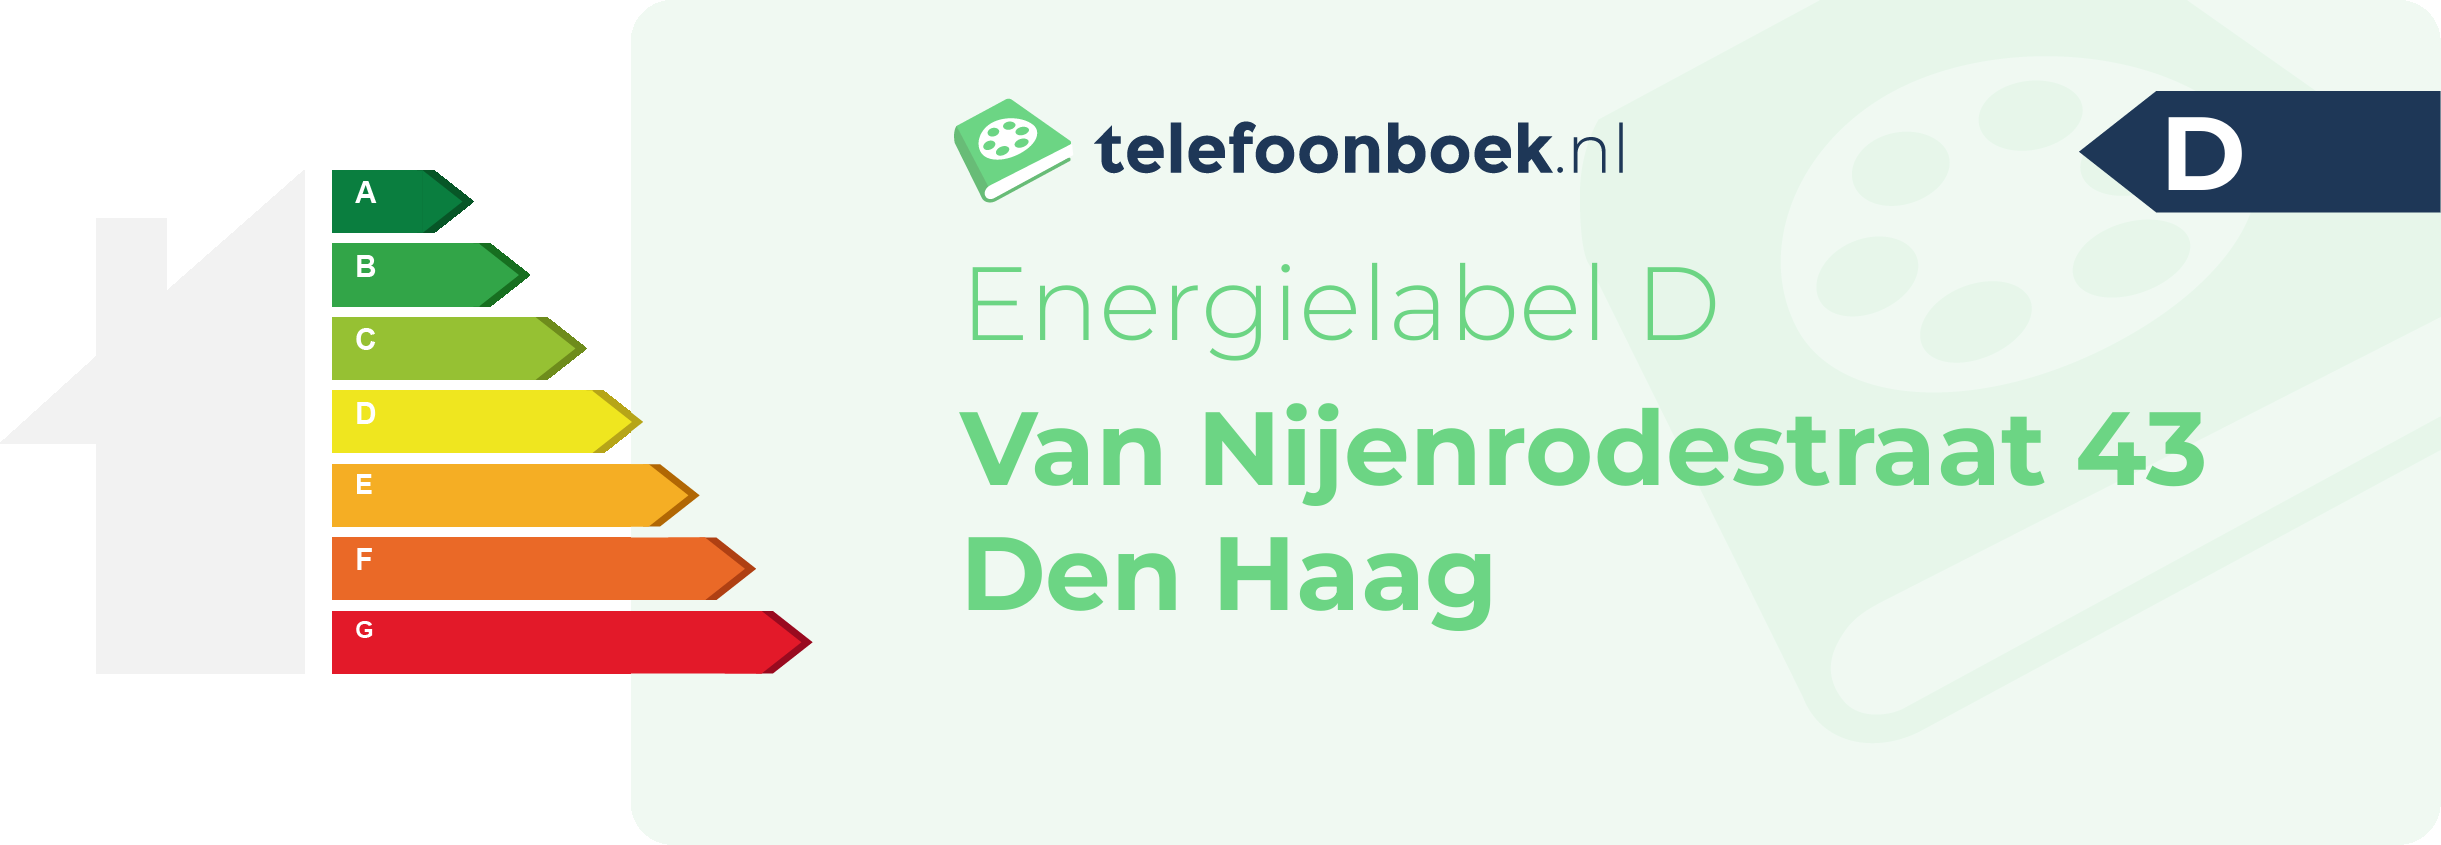 Energielabel Van Nijenrodestraat 43 Den Haag